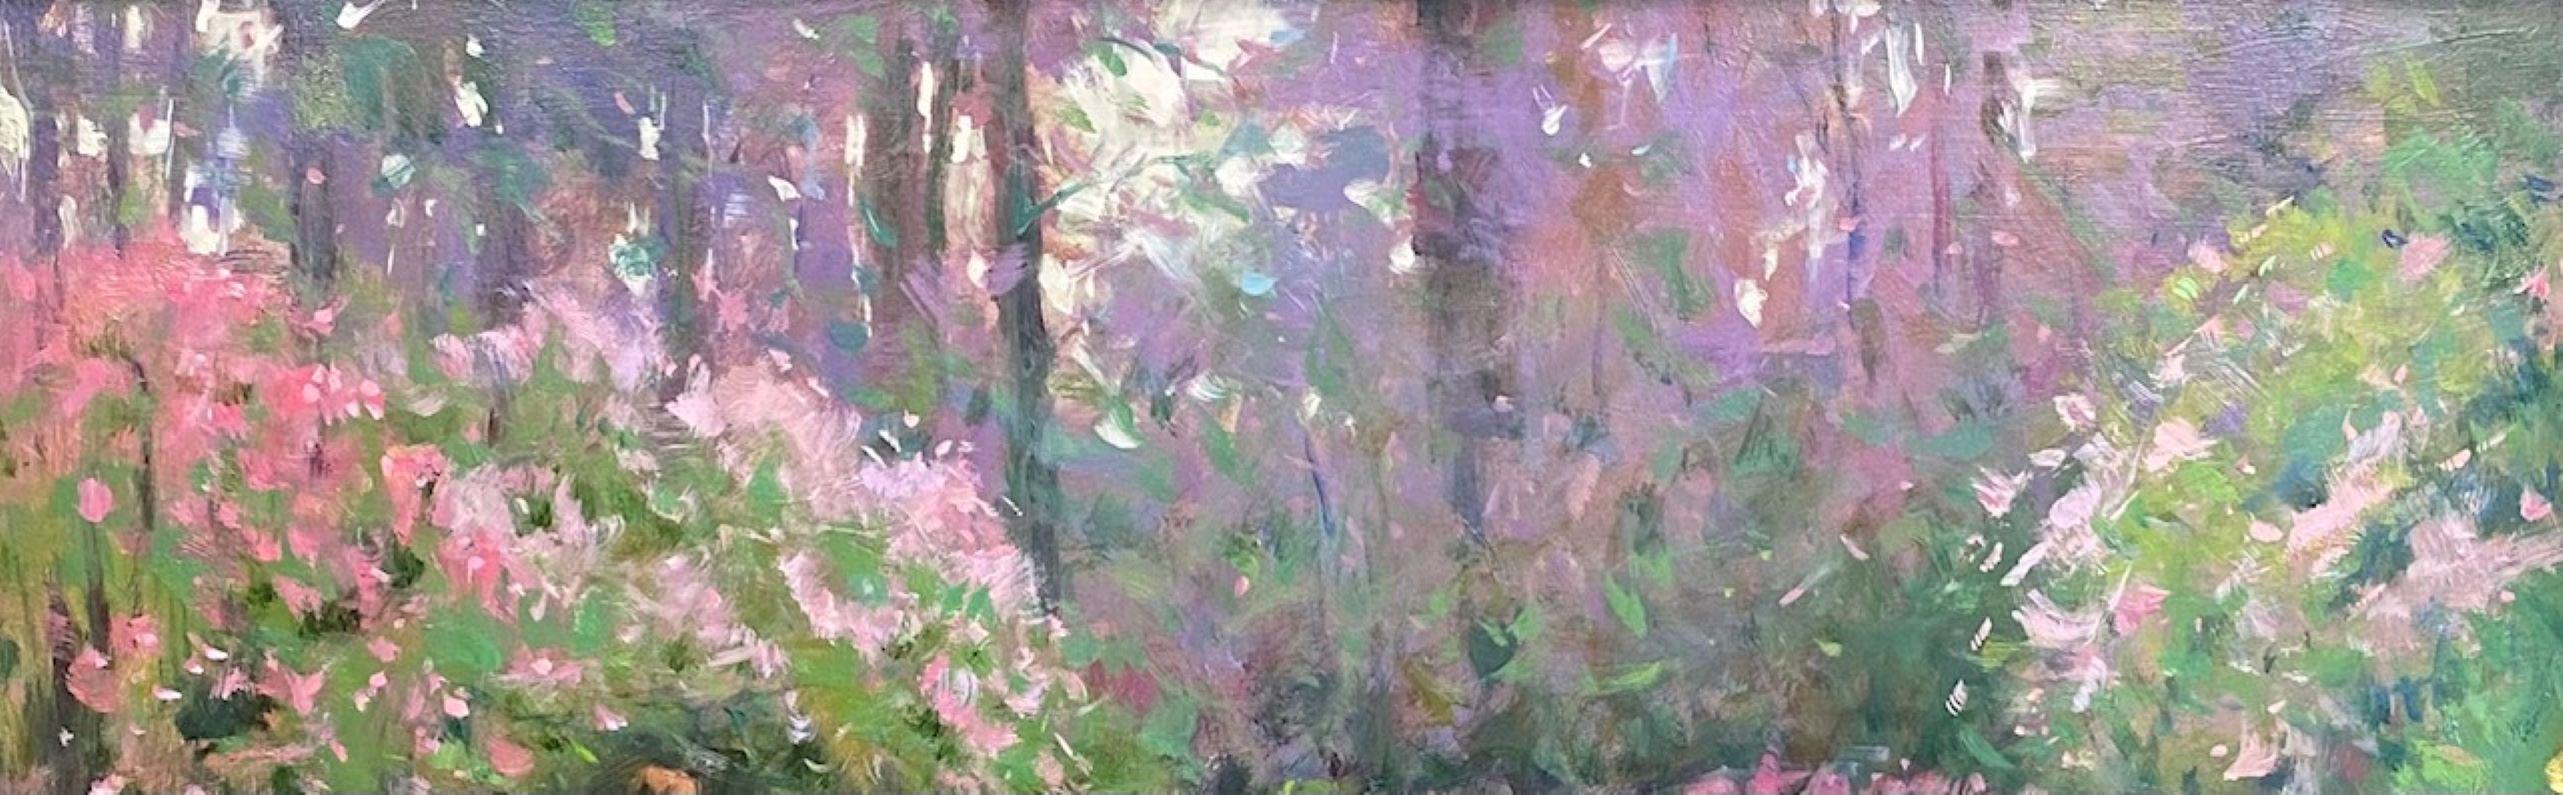 Forest at Winterthur Garden, original 20x24 impressionist floral landscape For Sale 5